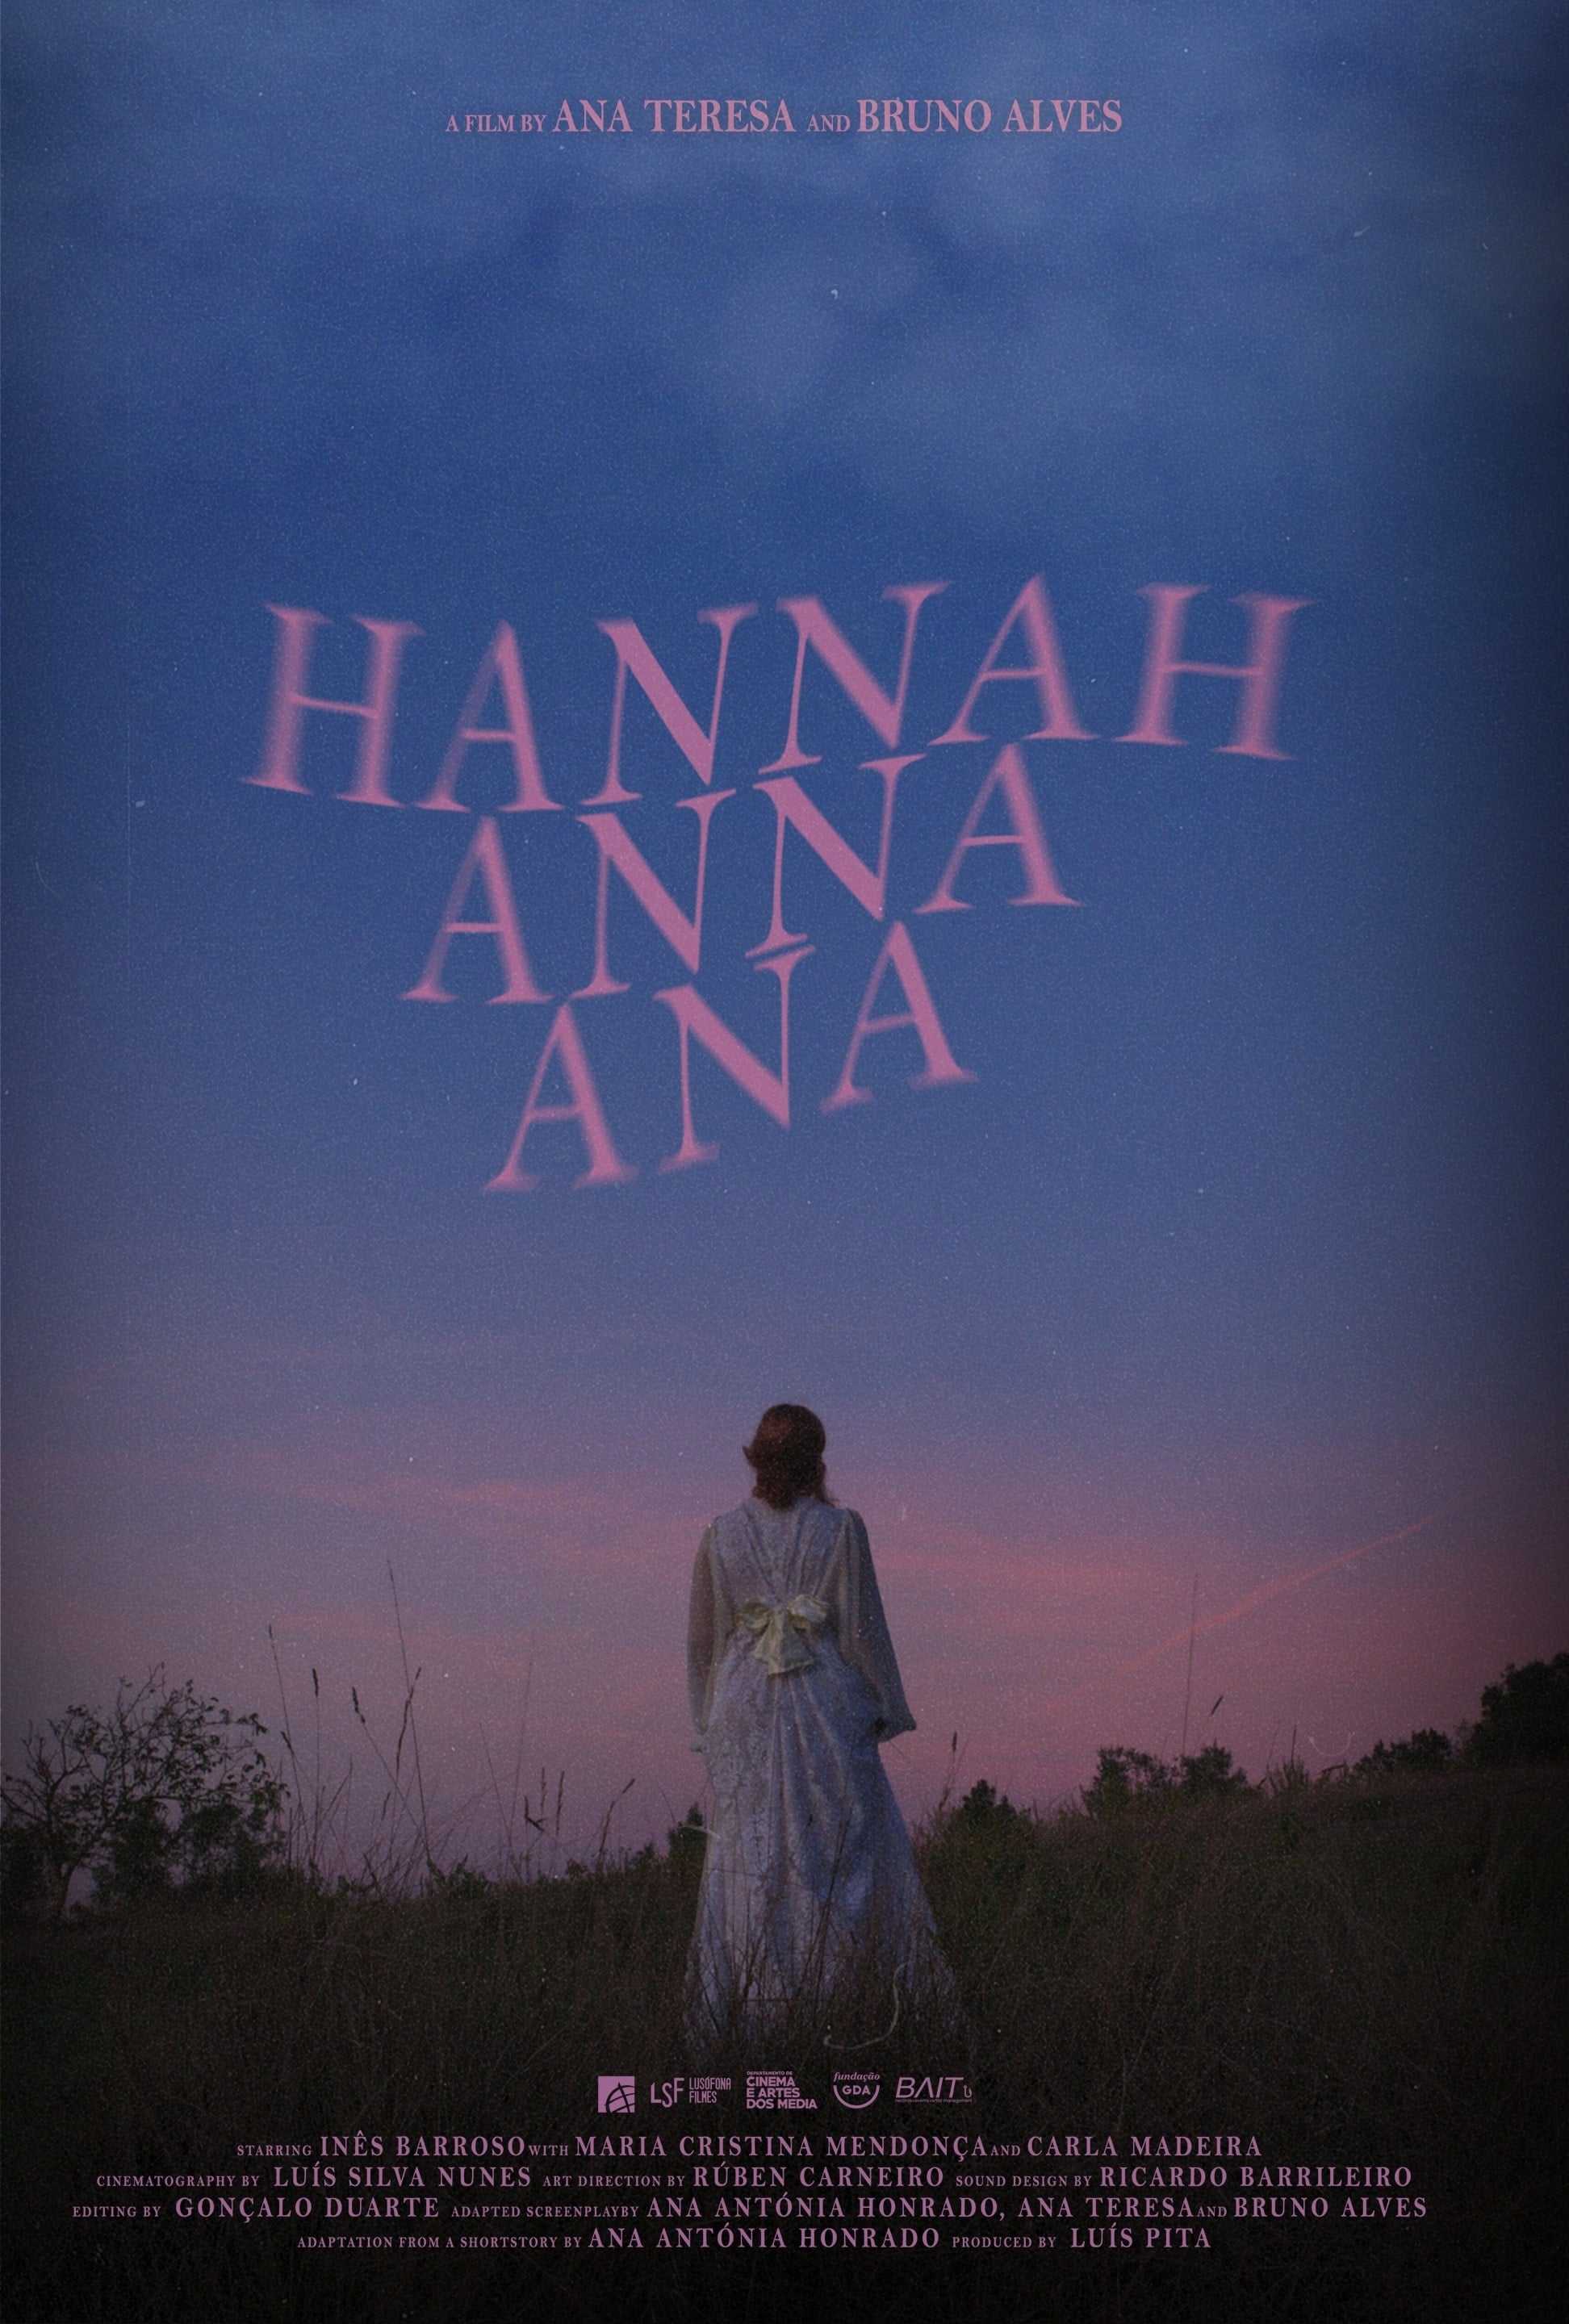 Hannah Anna Ana